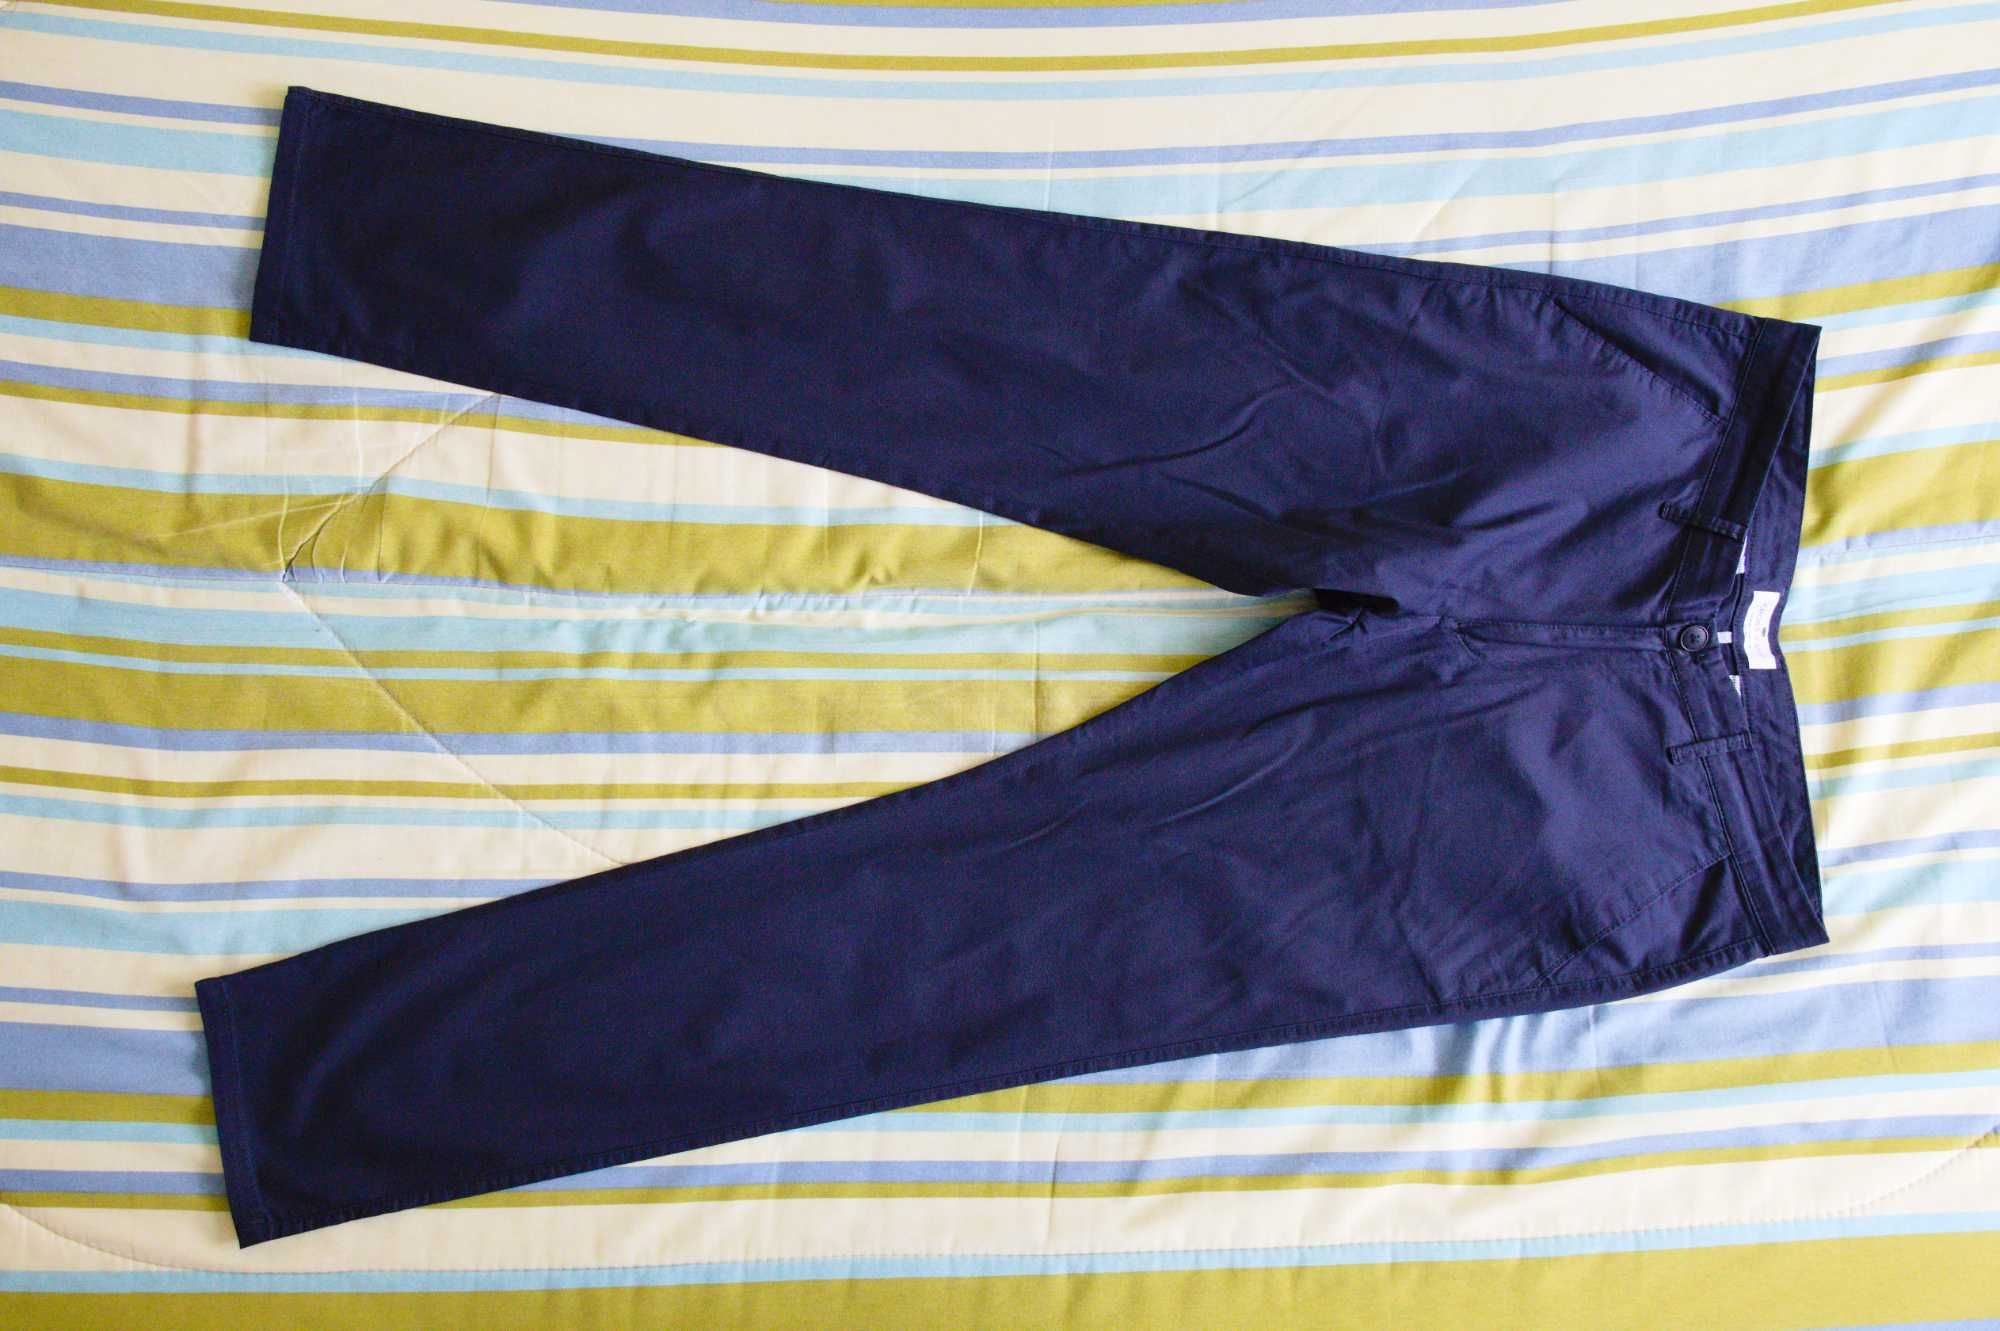 Spodnie męskie Cross Jeans, chino, W34/L34, granatowe, jak nowe